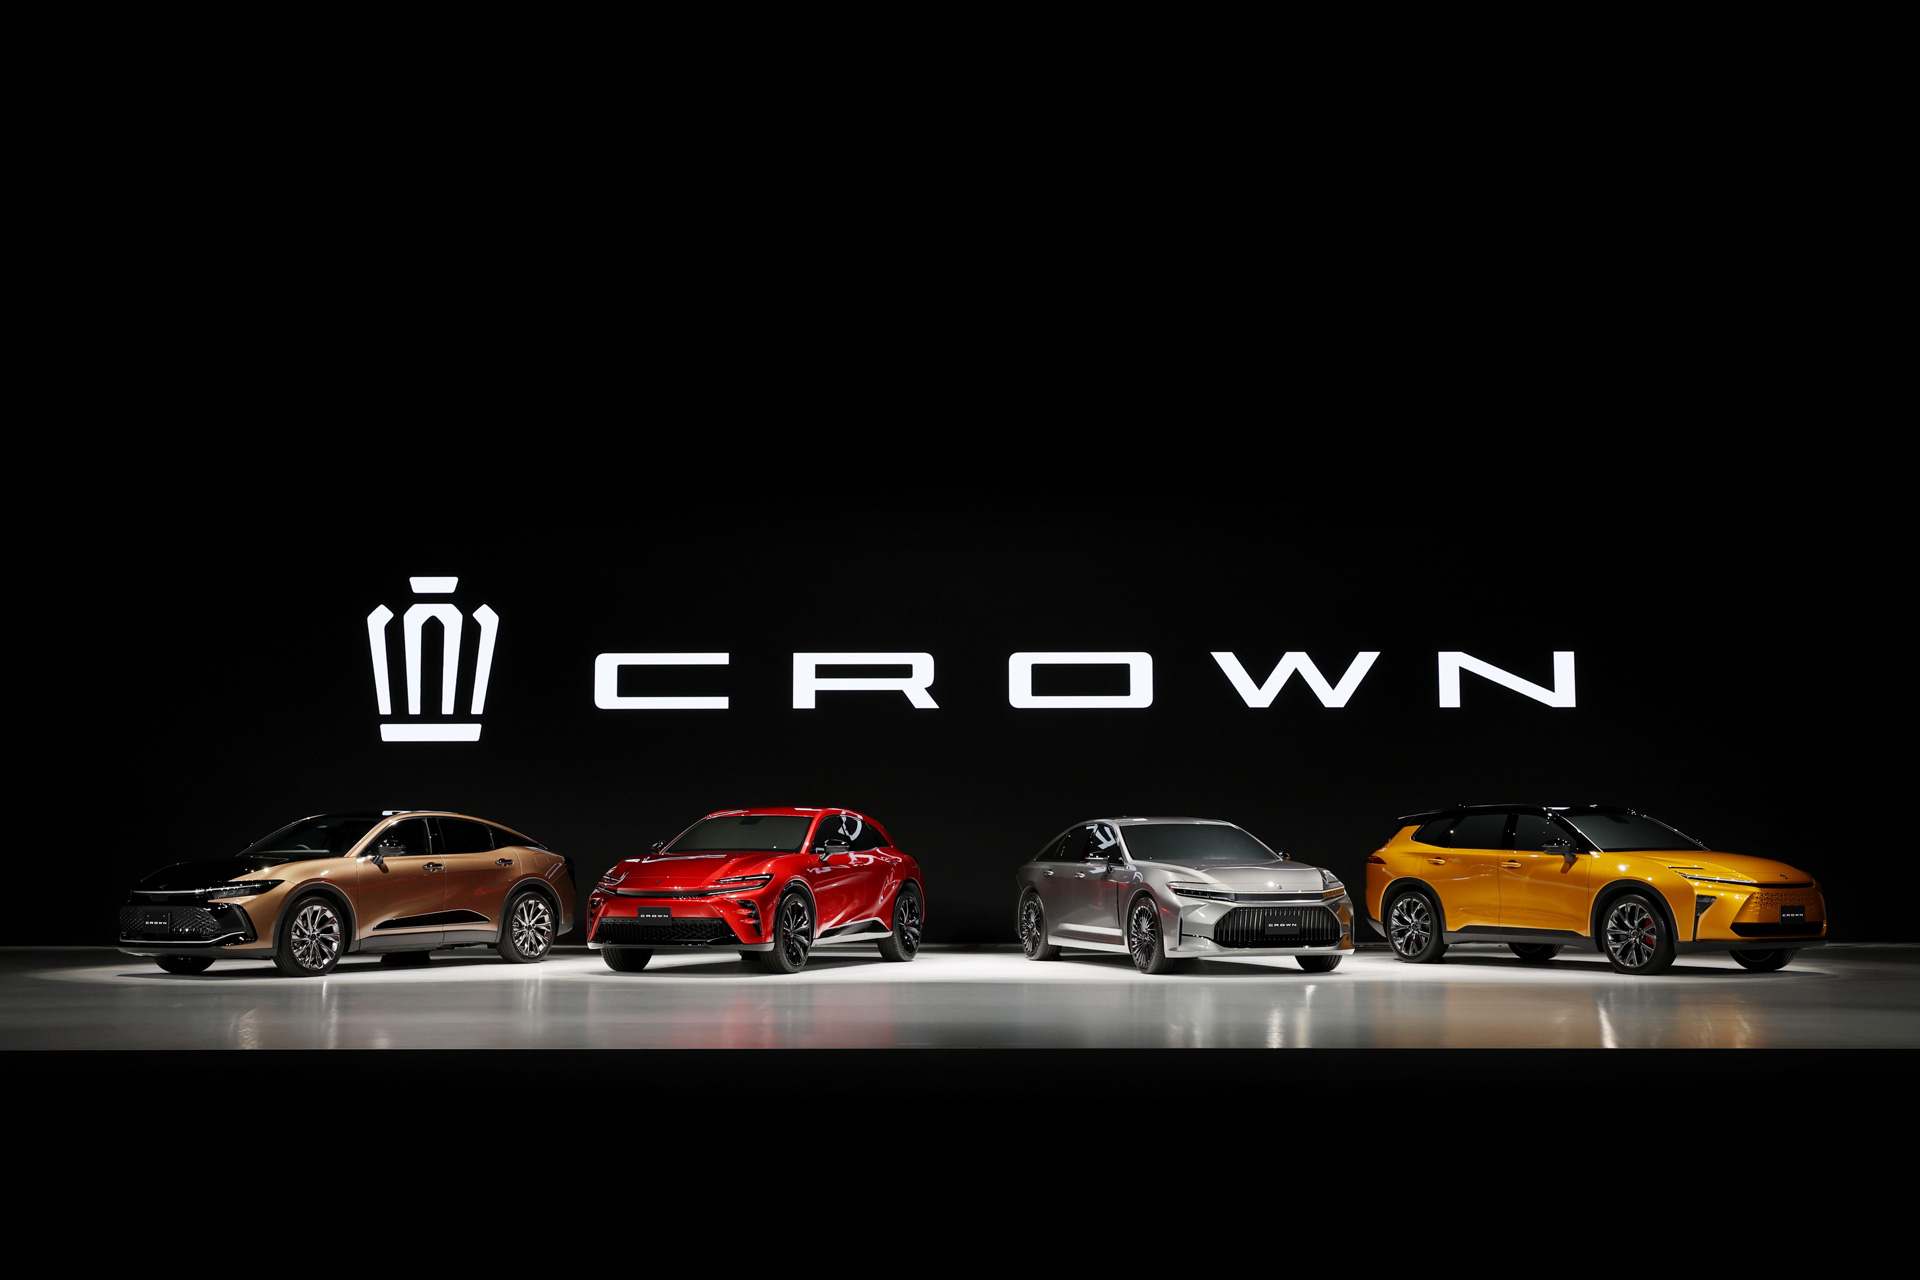 クラウン | トヨタ自動車株式会社 公式企業サイト